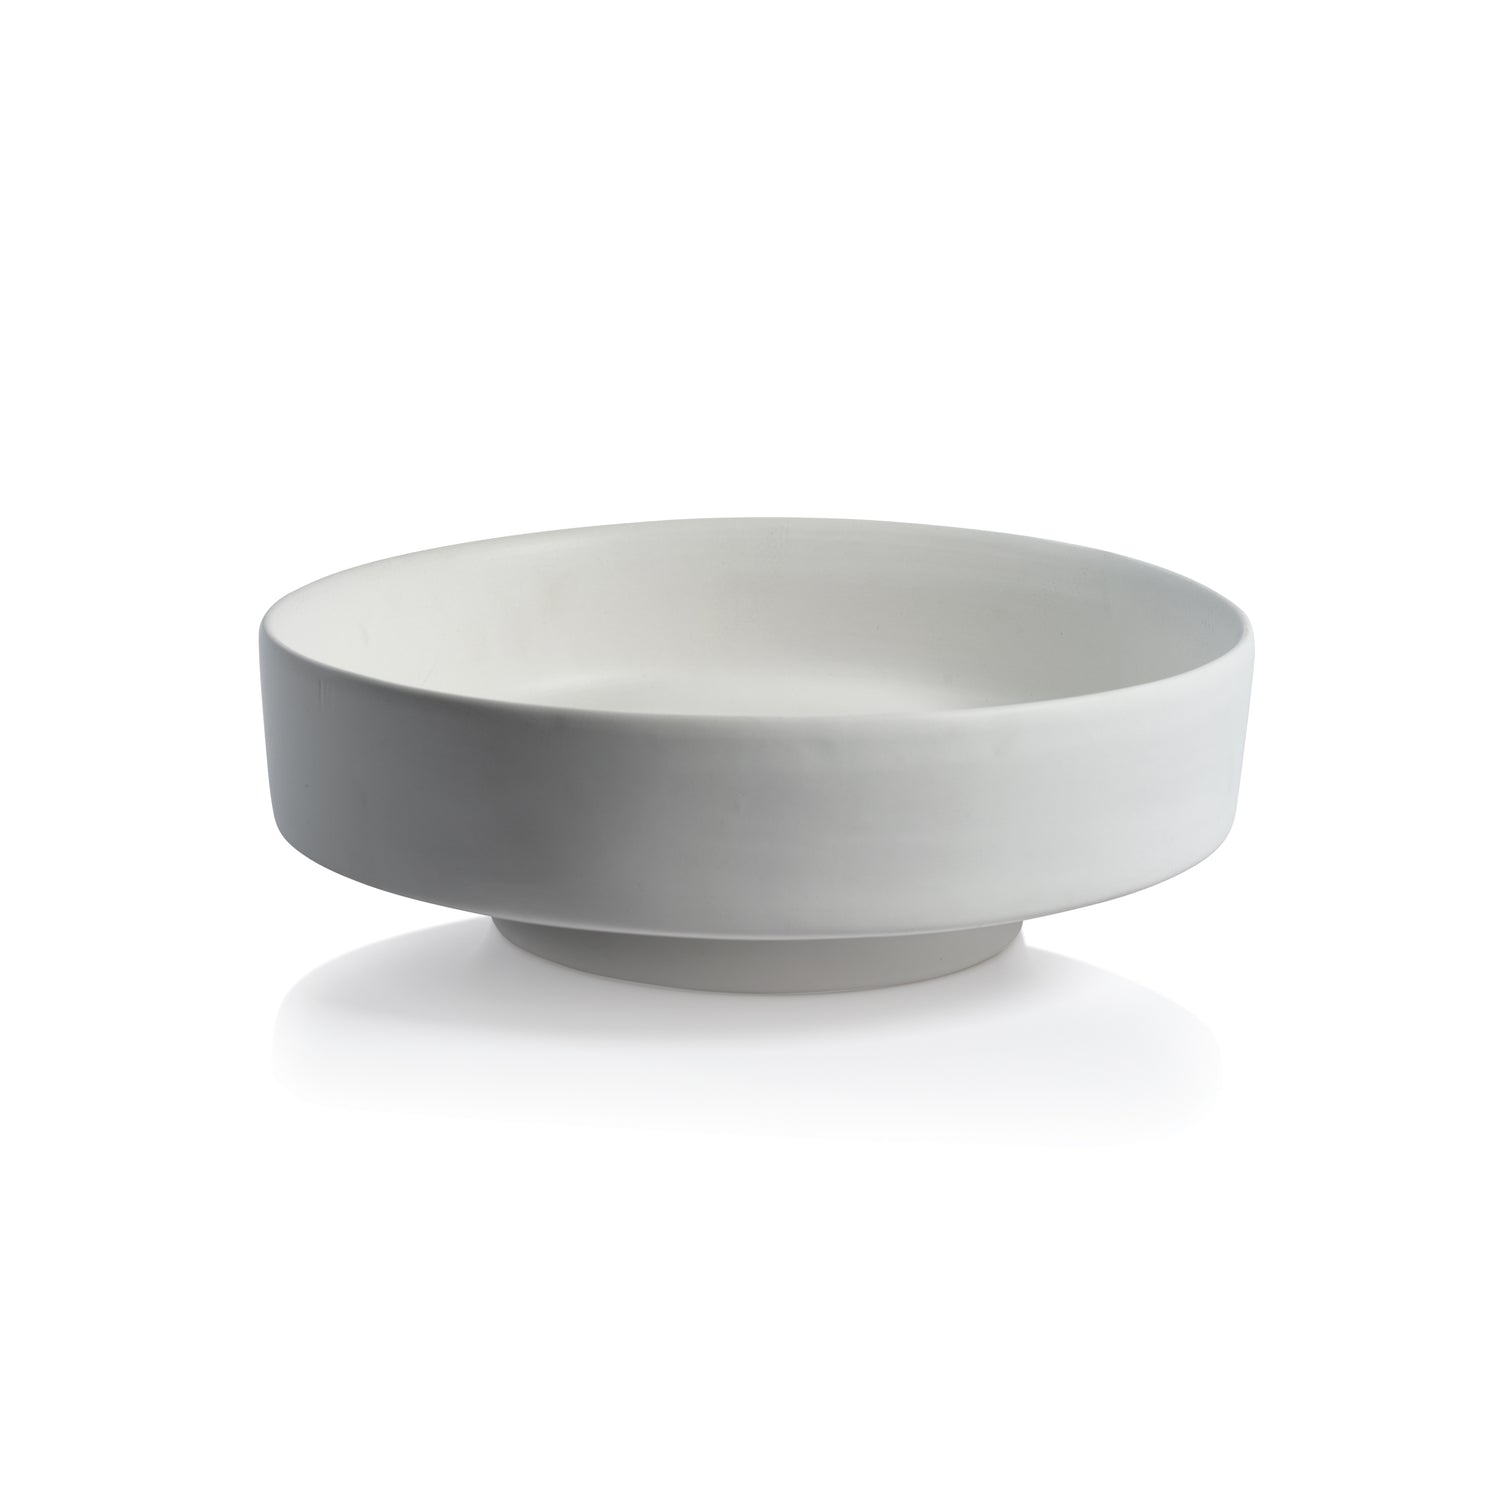 Côte d'Azur White Ceramic Centerpiece Bowl